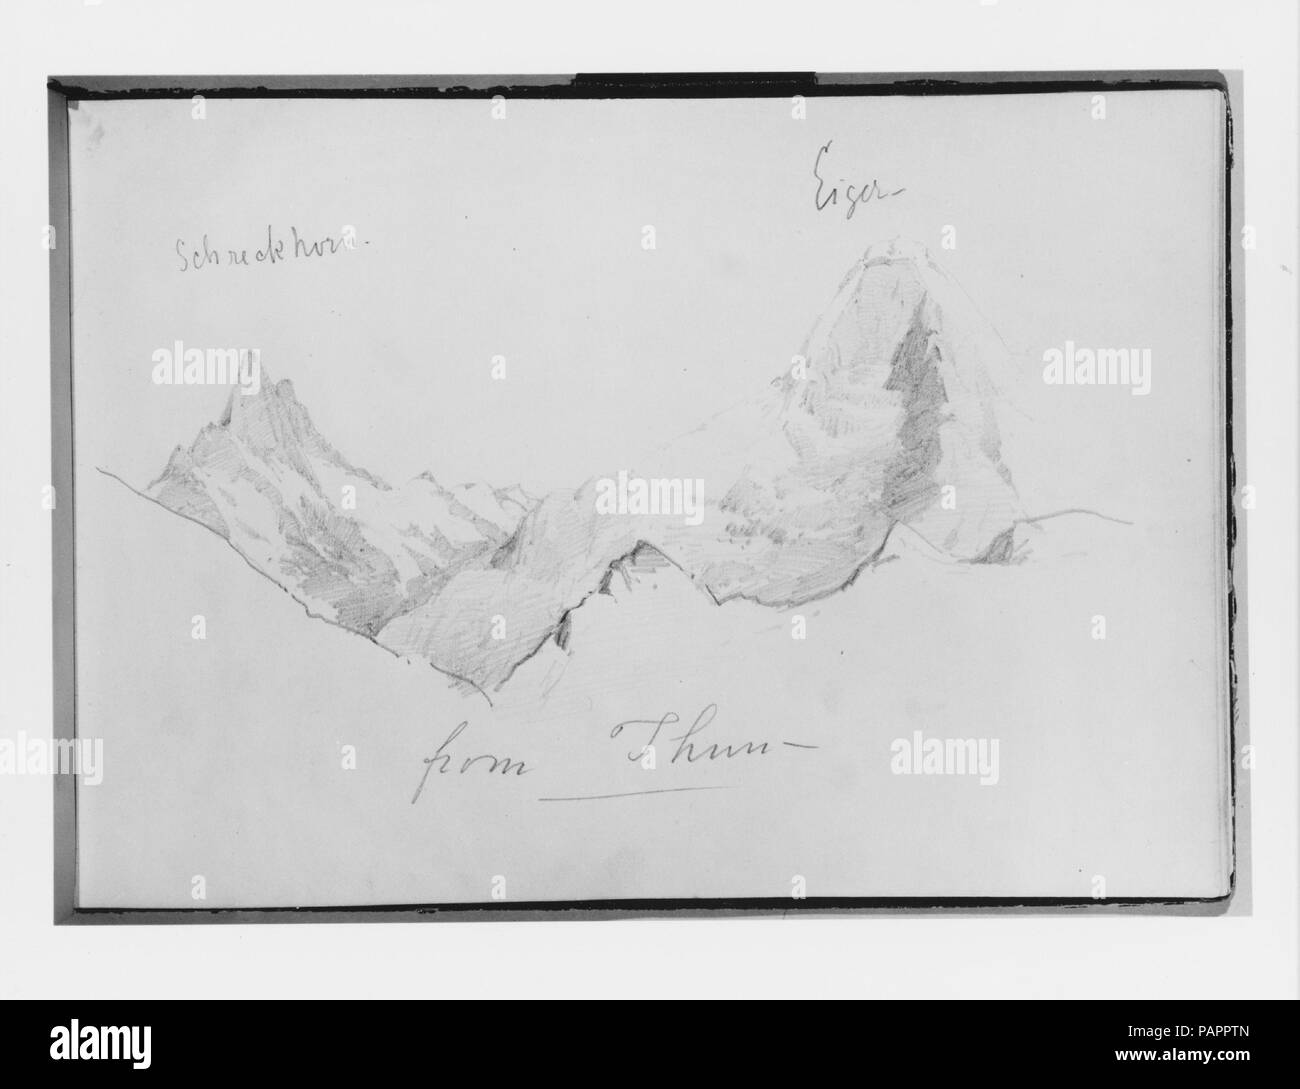 La Svizzera 1870 Sketchbook. Artista: John Singer Sargent (American, Firenze 1856-1925 Londra). Dimensioni: Chiuso: 8 x 11 1/4 x 1/2 in. (20,3 x 28,6 x 1,3 cm) di fogli: 8 x 11 1/8 in. (20,3 x 28,3 cm). Data: 1870. Questa immagine rappresenta uno dei quaranta sei disegni e acquerelli in questo taccuino. Museo: Metropolitan Museum of Art di New York, Stati Uniti d'America. Foto Stock